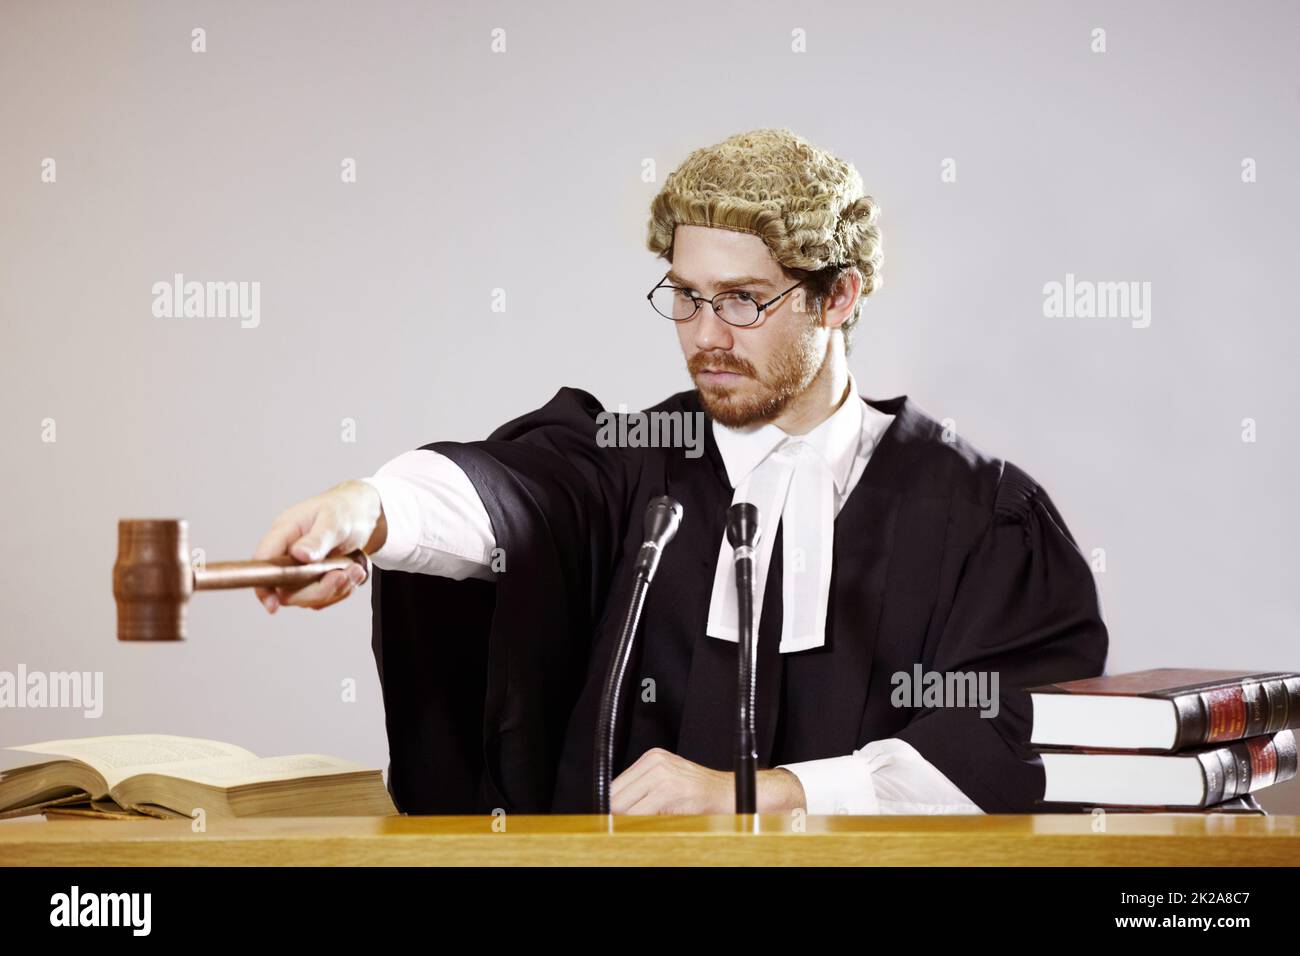 Stille. Seriöse junge Richterin sitzt im Gerichtssaal mit strengem Gesichtsausdruck, während sie einen Gavel aushält. Stockfoto